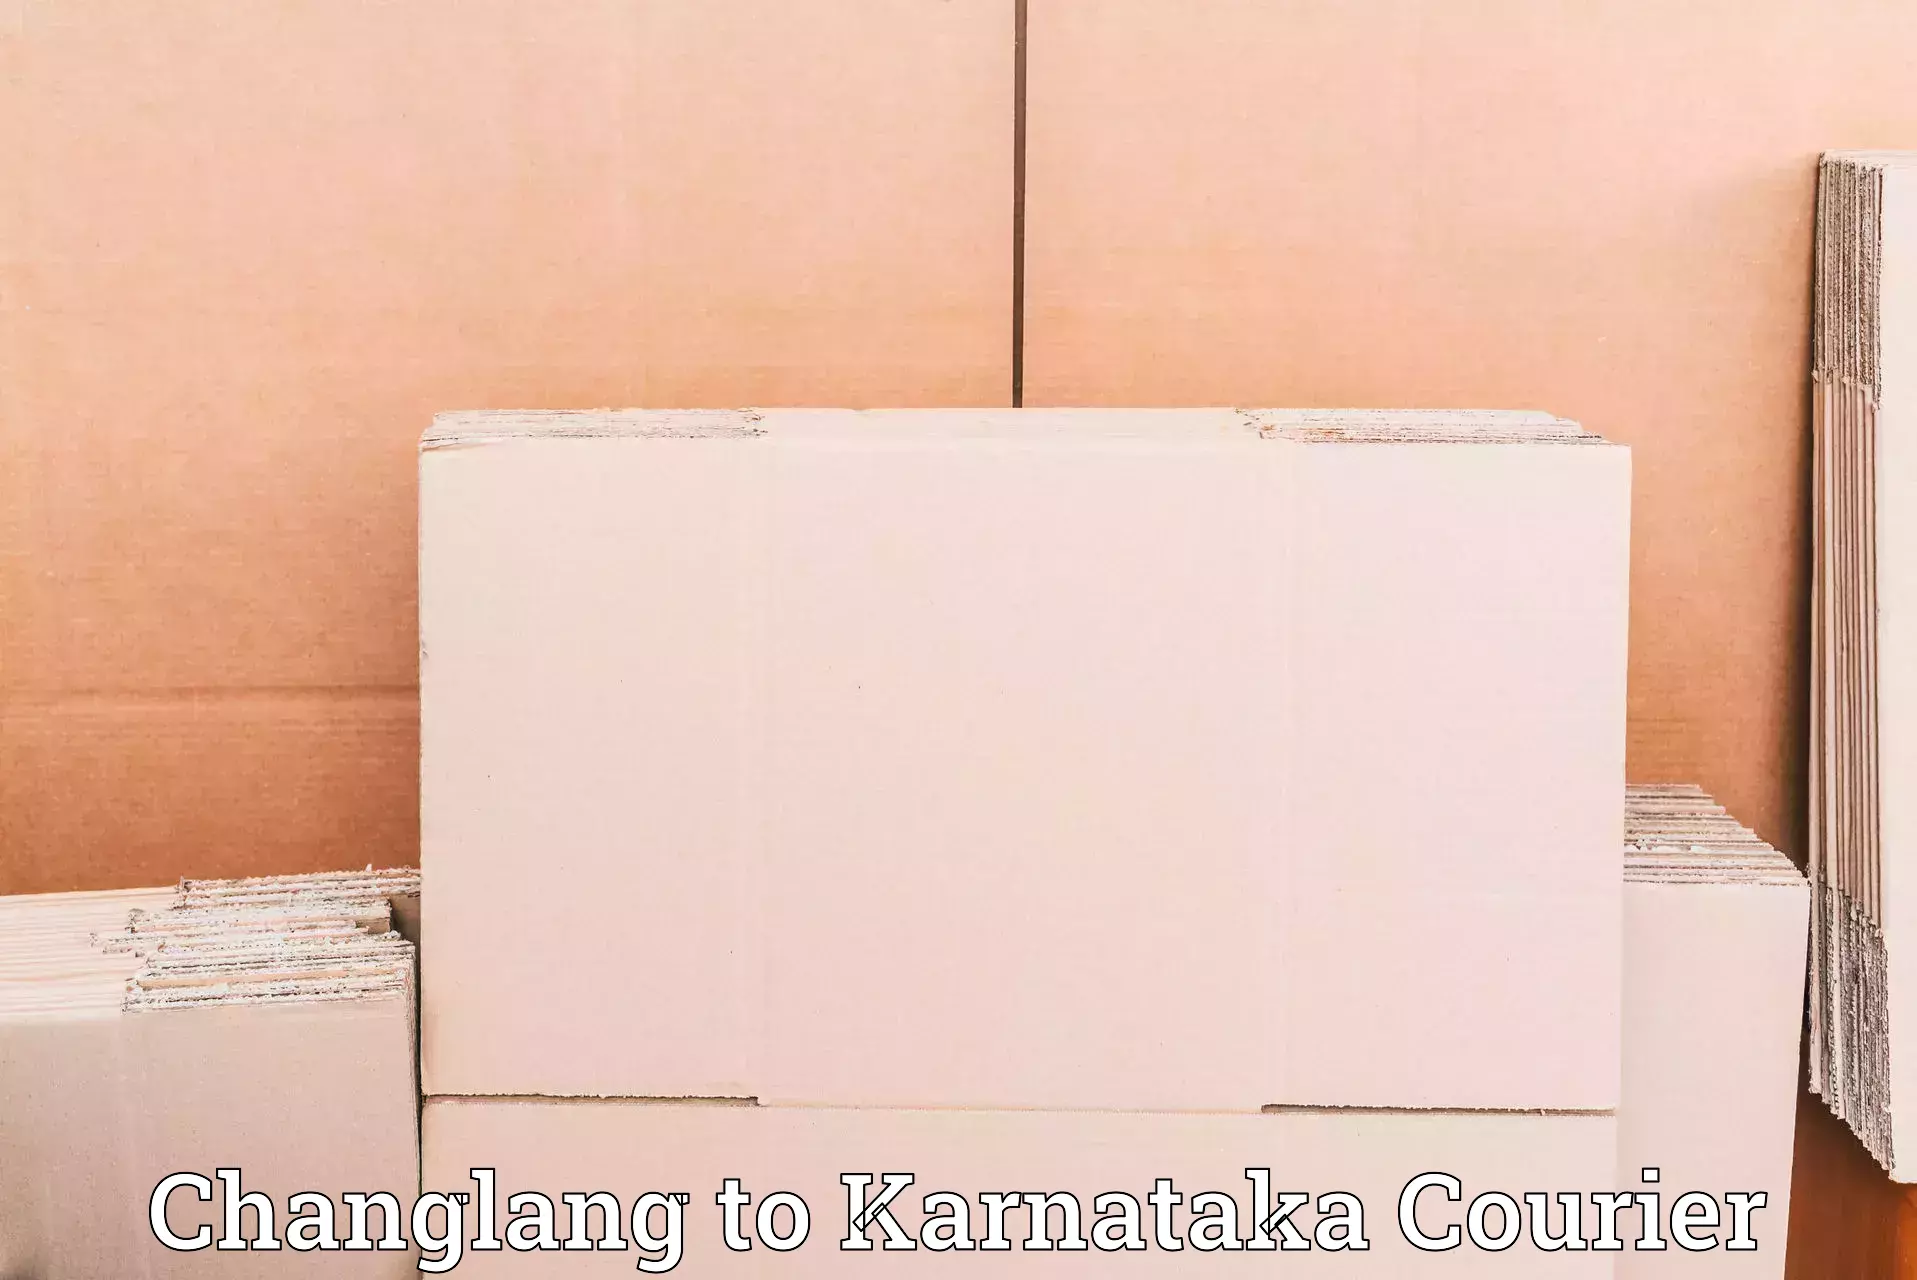 Same-day delivery solutions Changlang to Basavanagudi